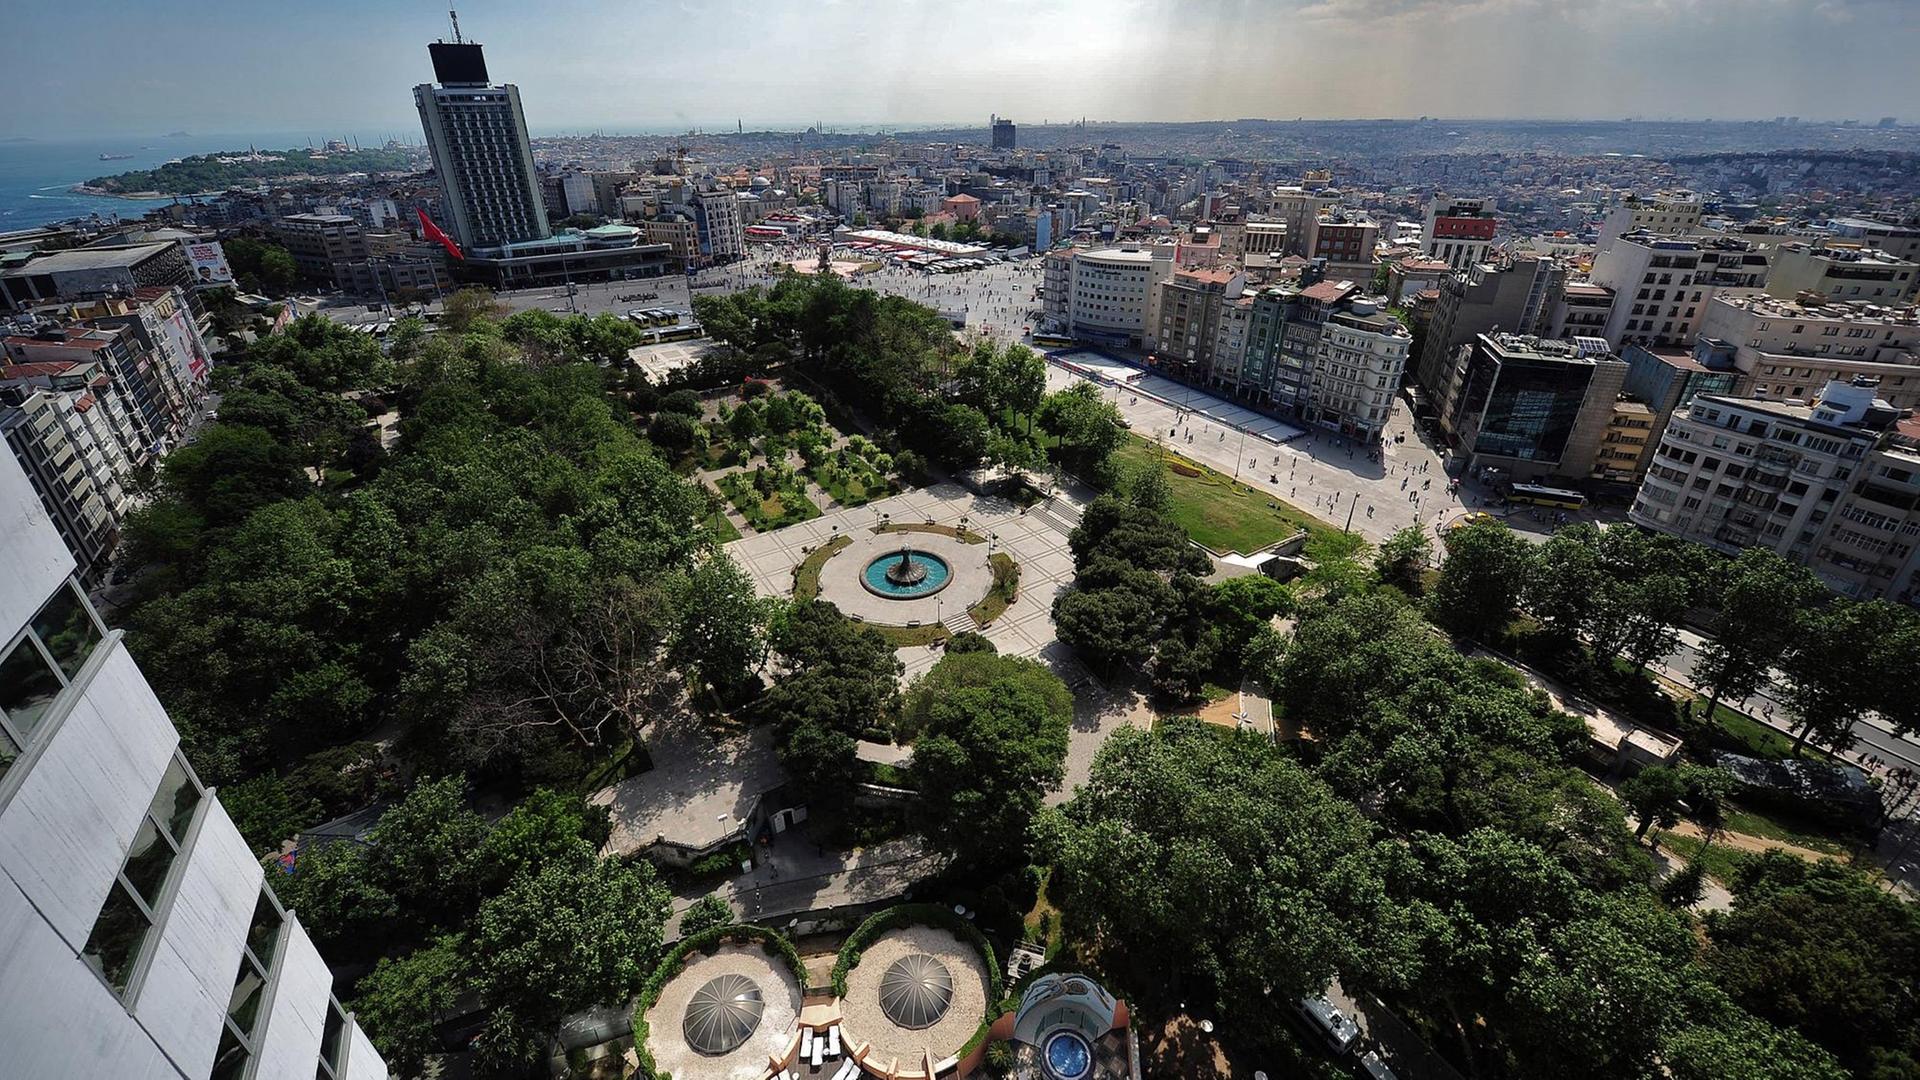 Luftbild vom Gezi-Park, im Hintergrund der Taksim-Platz vor der Skyline Istanbuls.